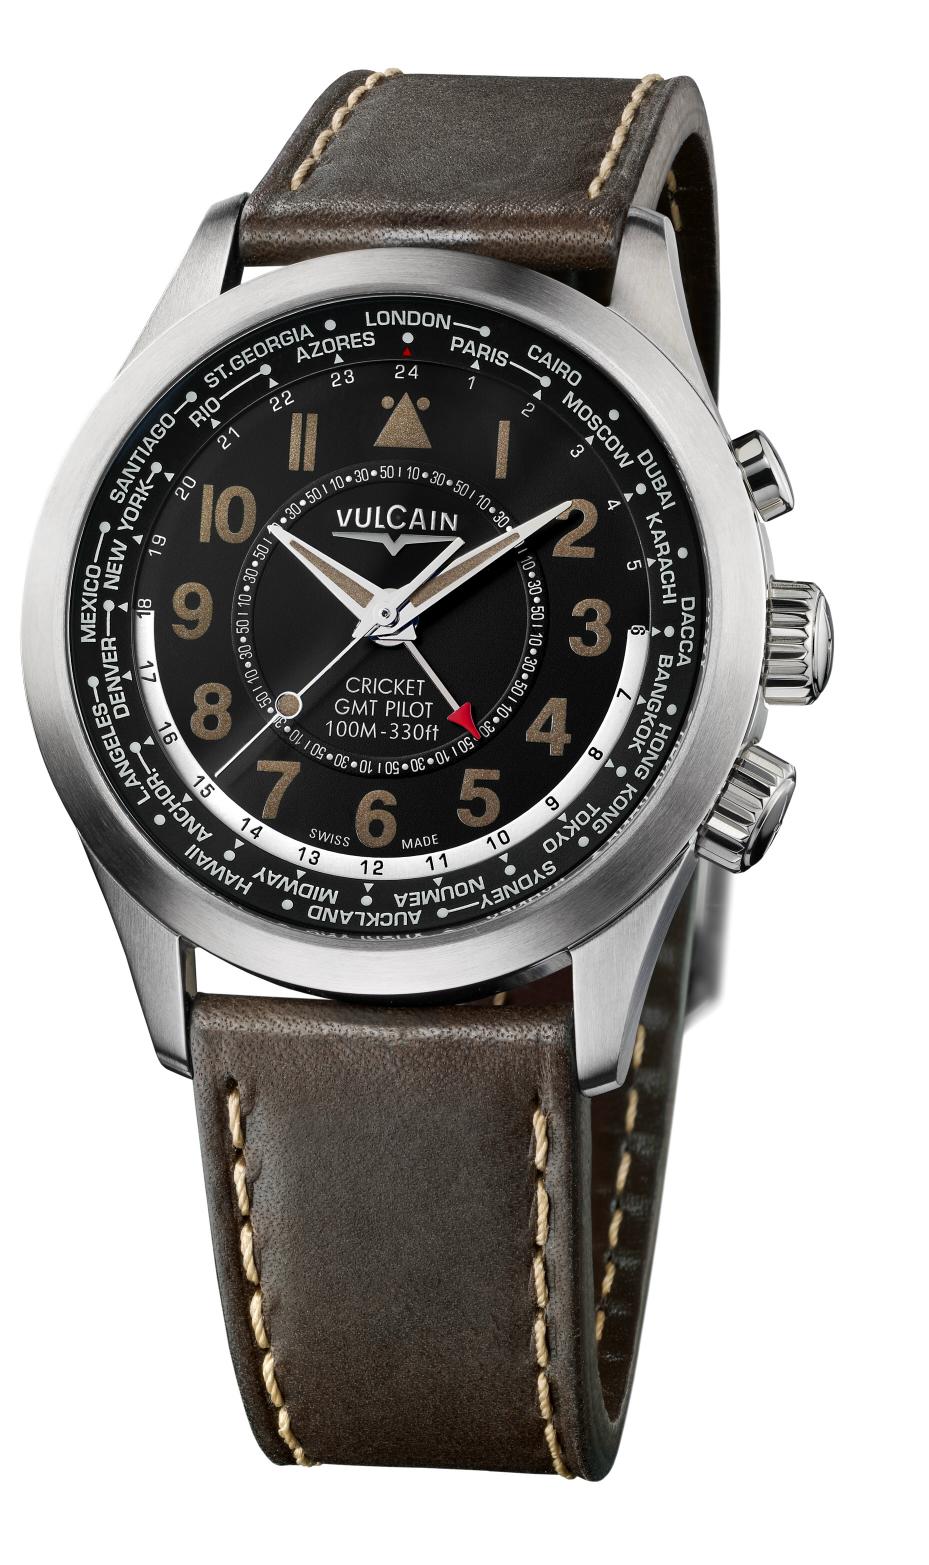 Votre aide est la bienvenue pour le choix d'une montre  Vulcain5